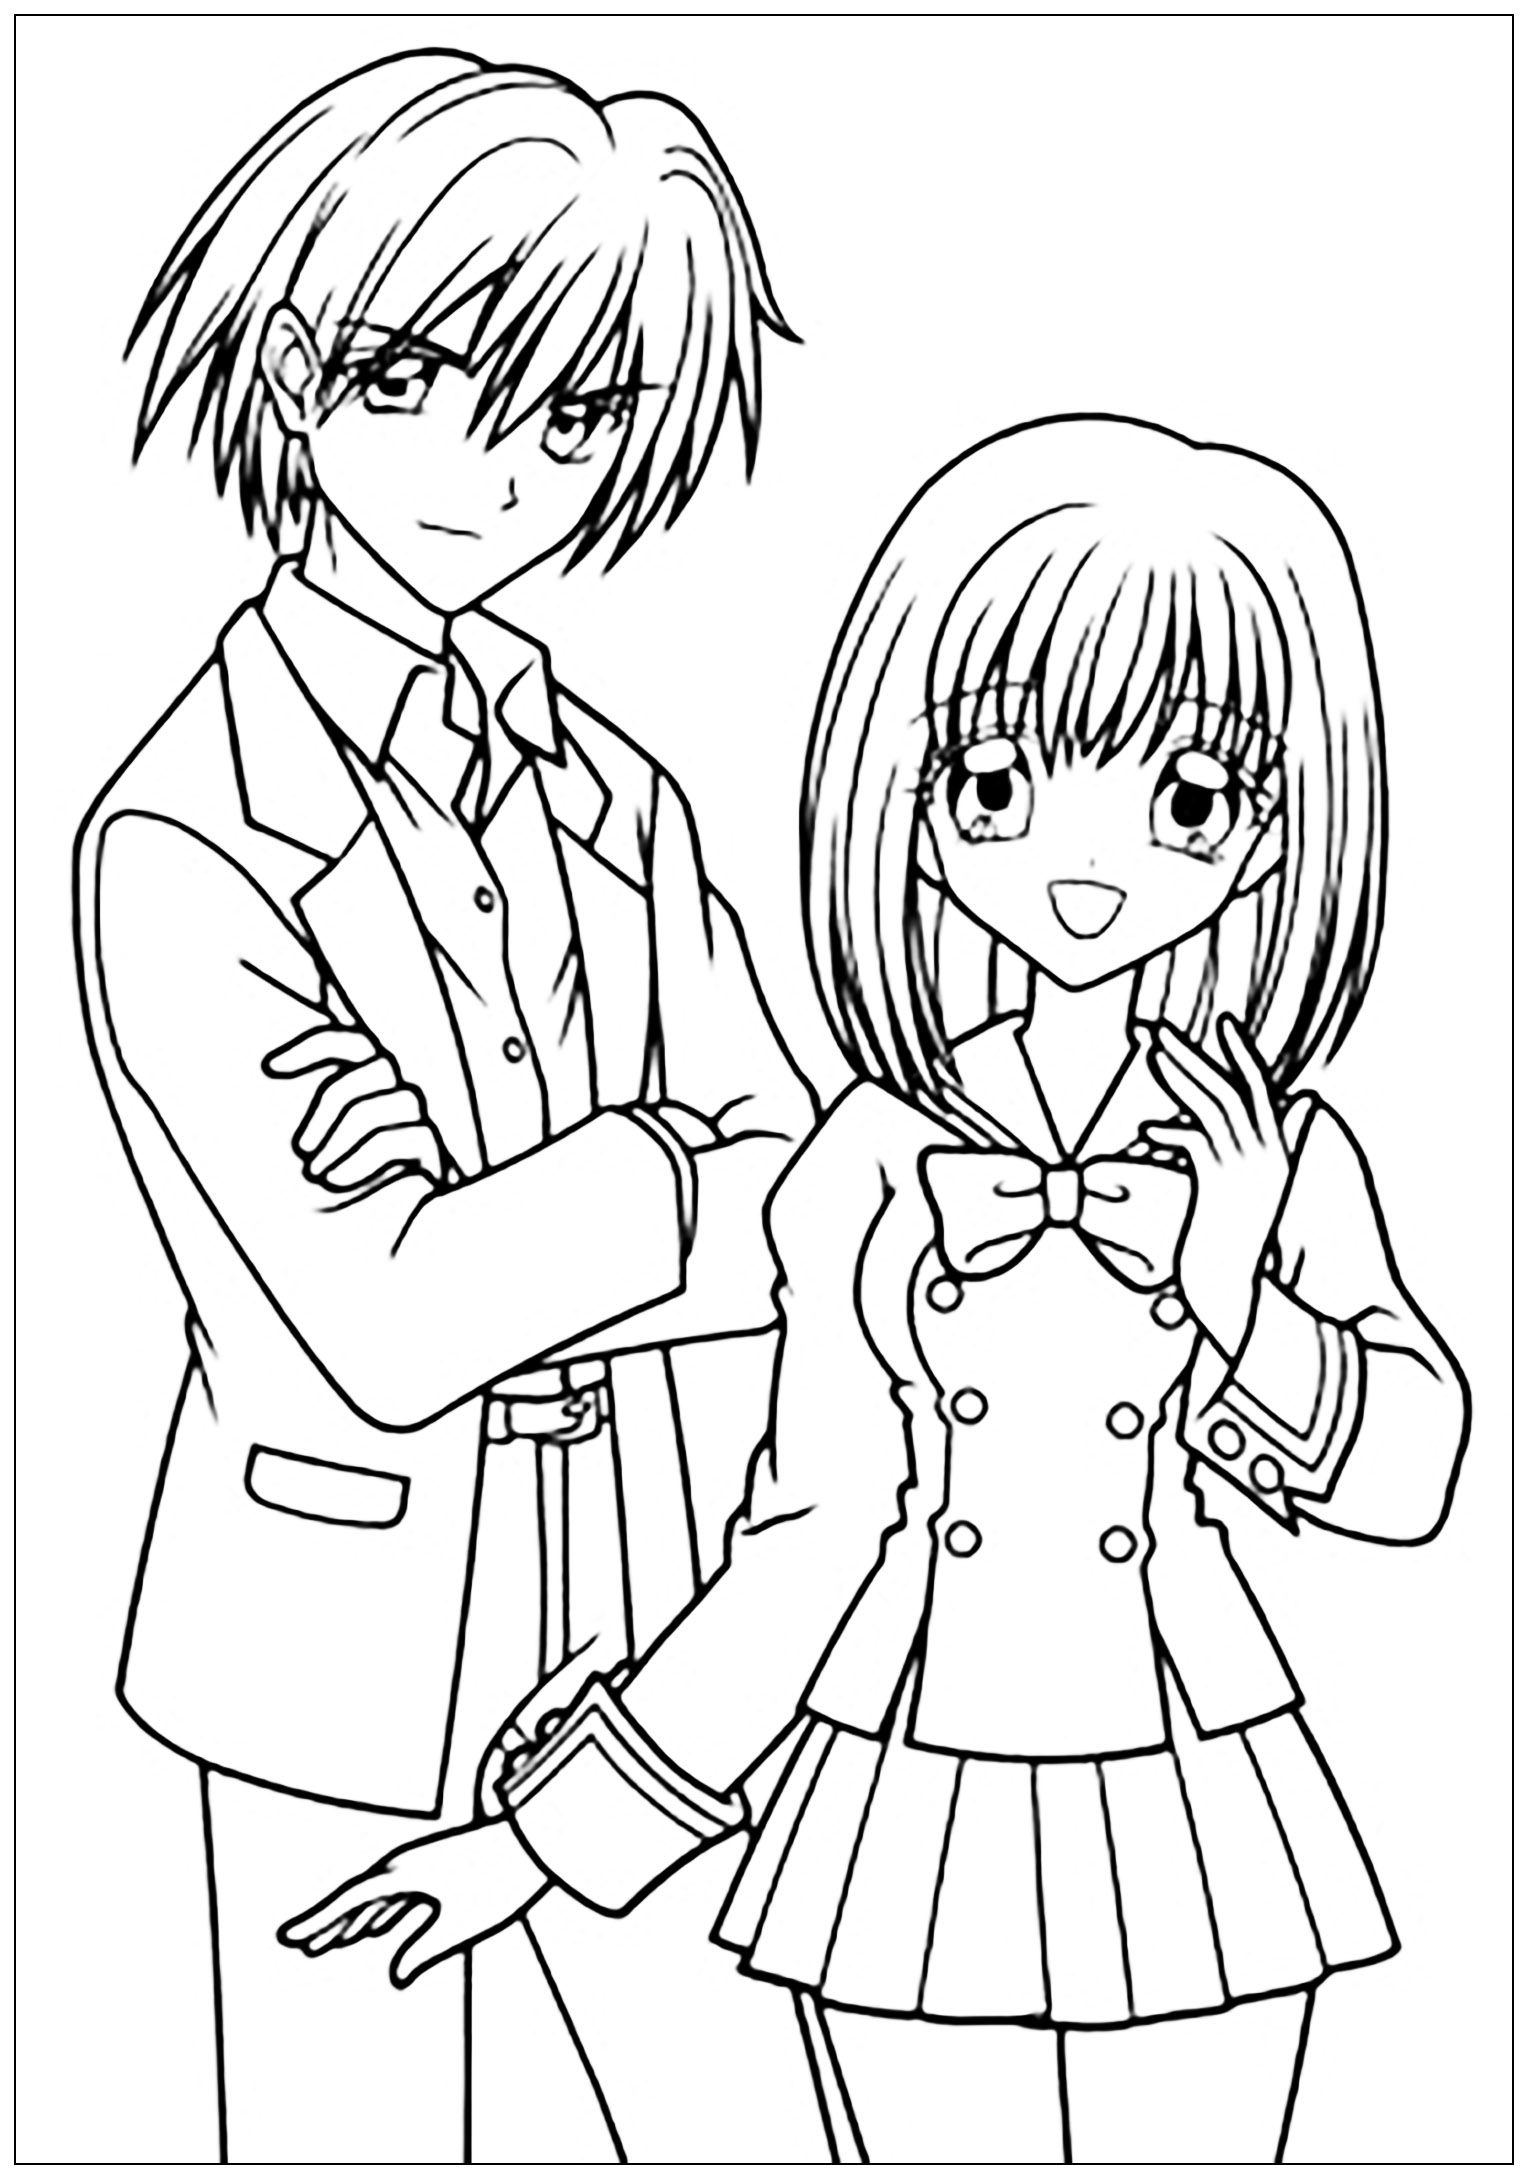 Garçon et Fille dessinés au style Manga, en tenue scolaire